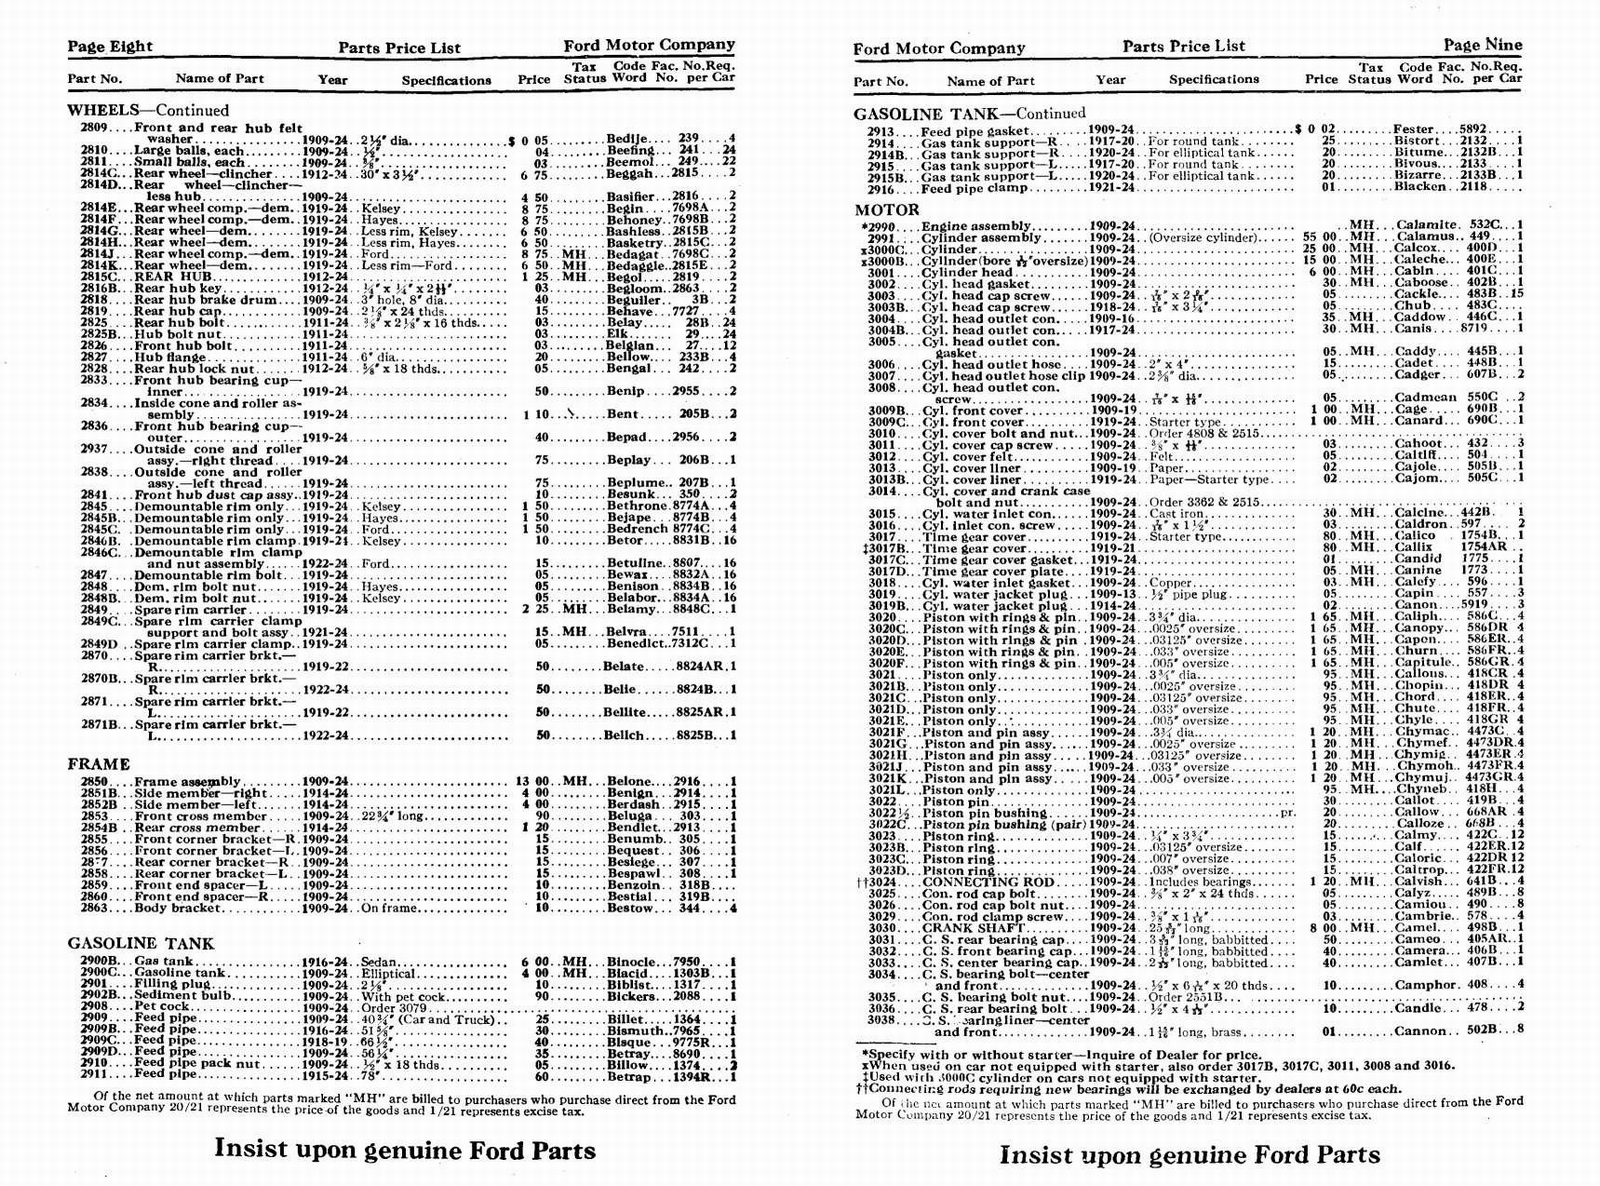 n_1924 Ford Price List-08-09.jpg